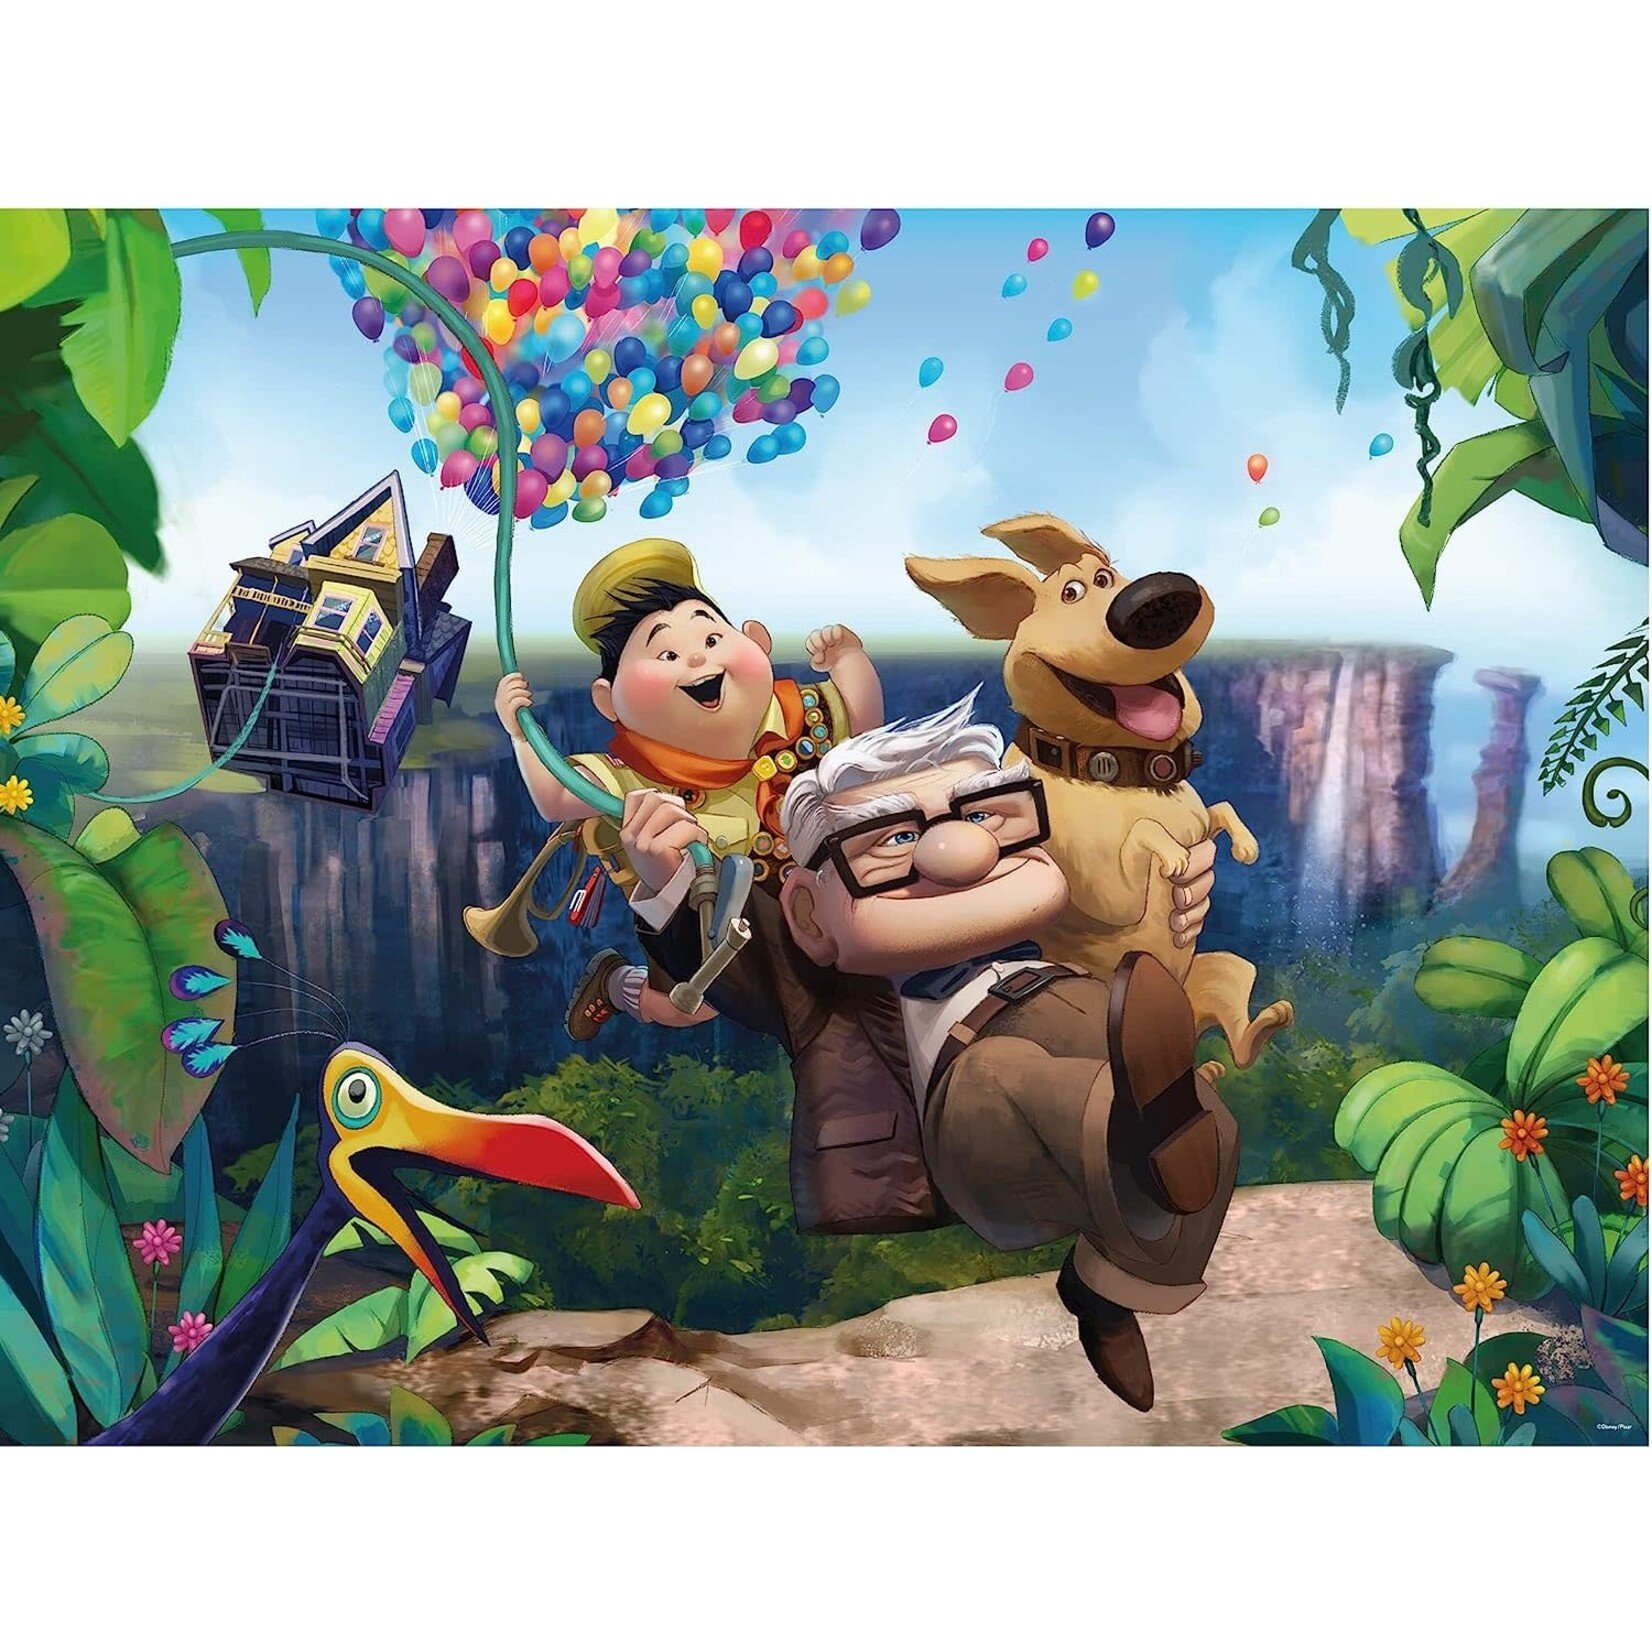 CEACO Disney Pixar UP 300 Piece Puzzle